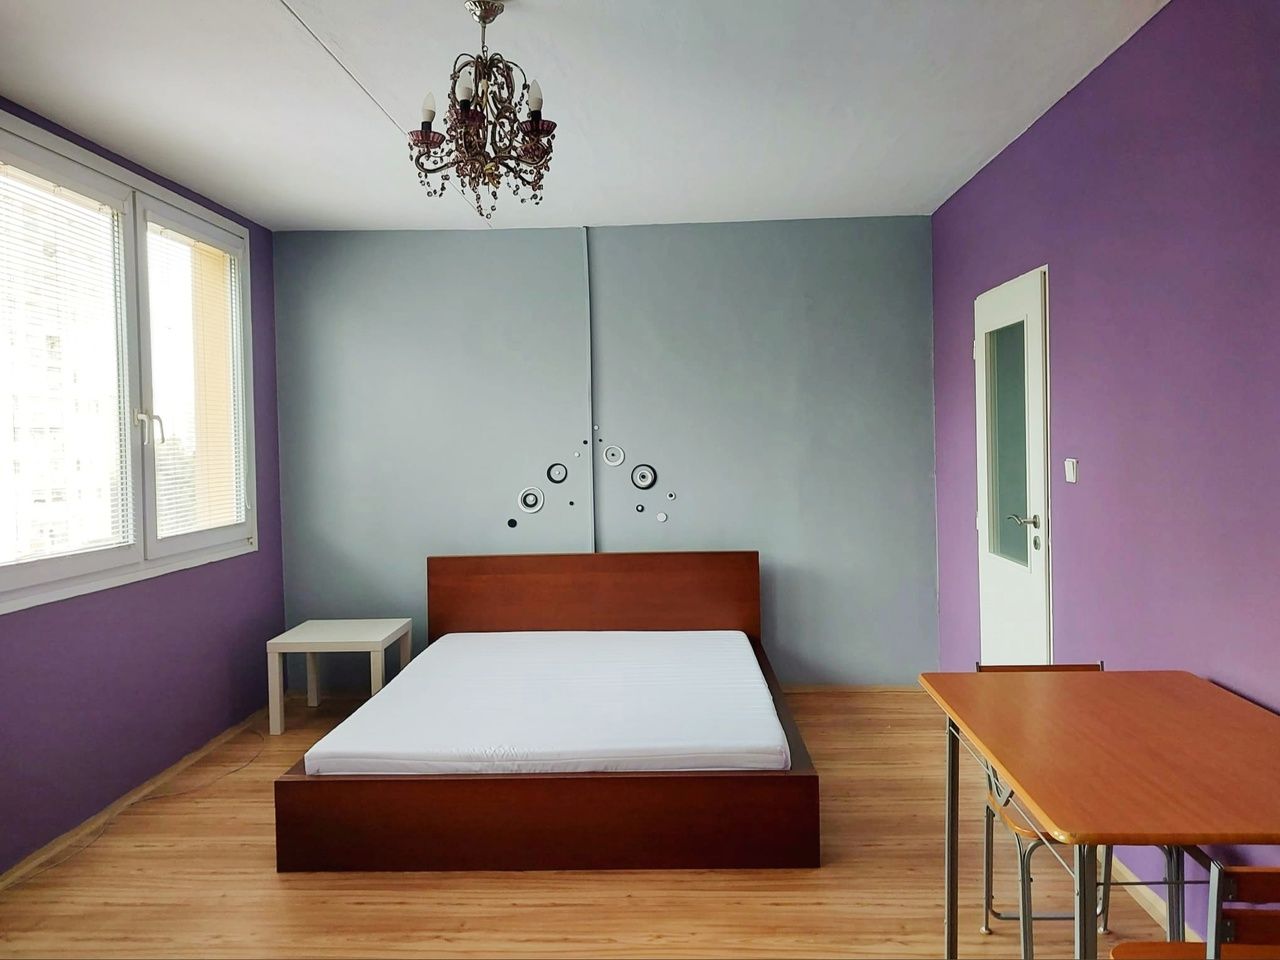 Pronájem apartmánu 1kk, 30m2, na adrese: Makovského, Praha - Řepy.